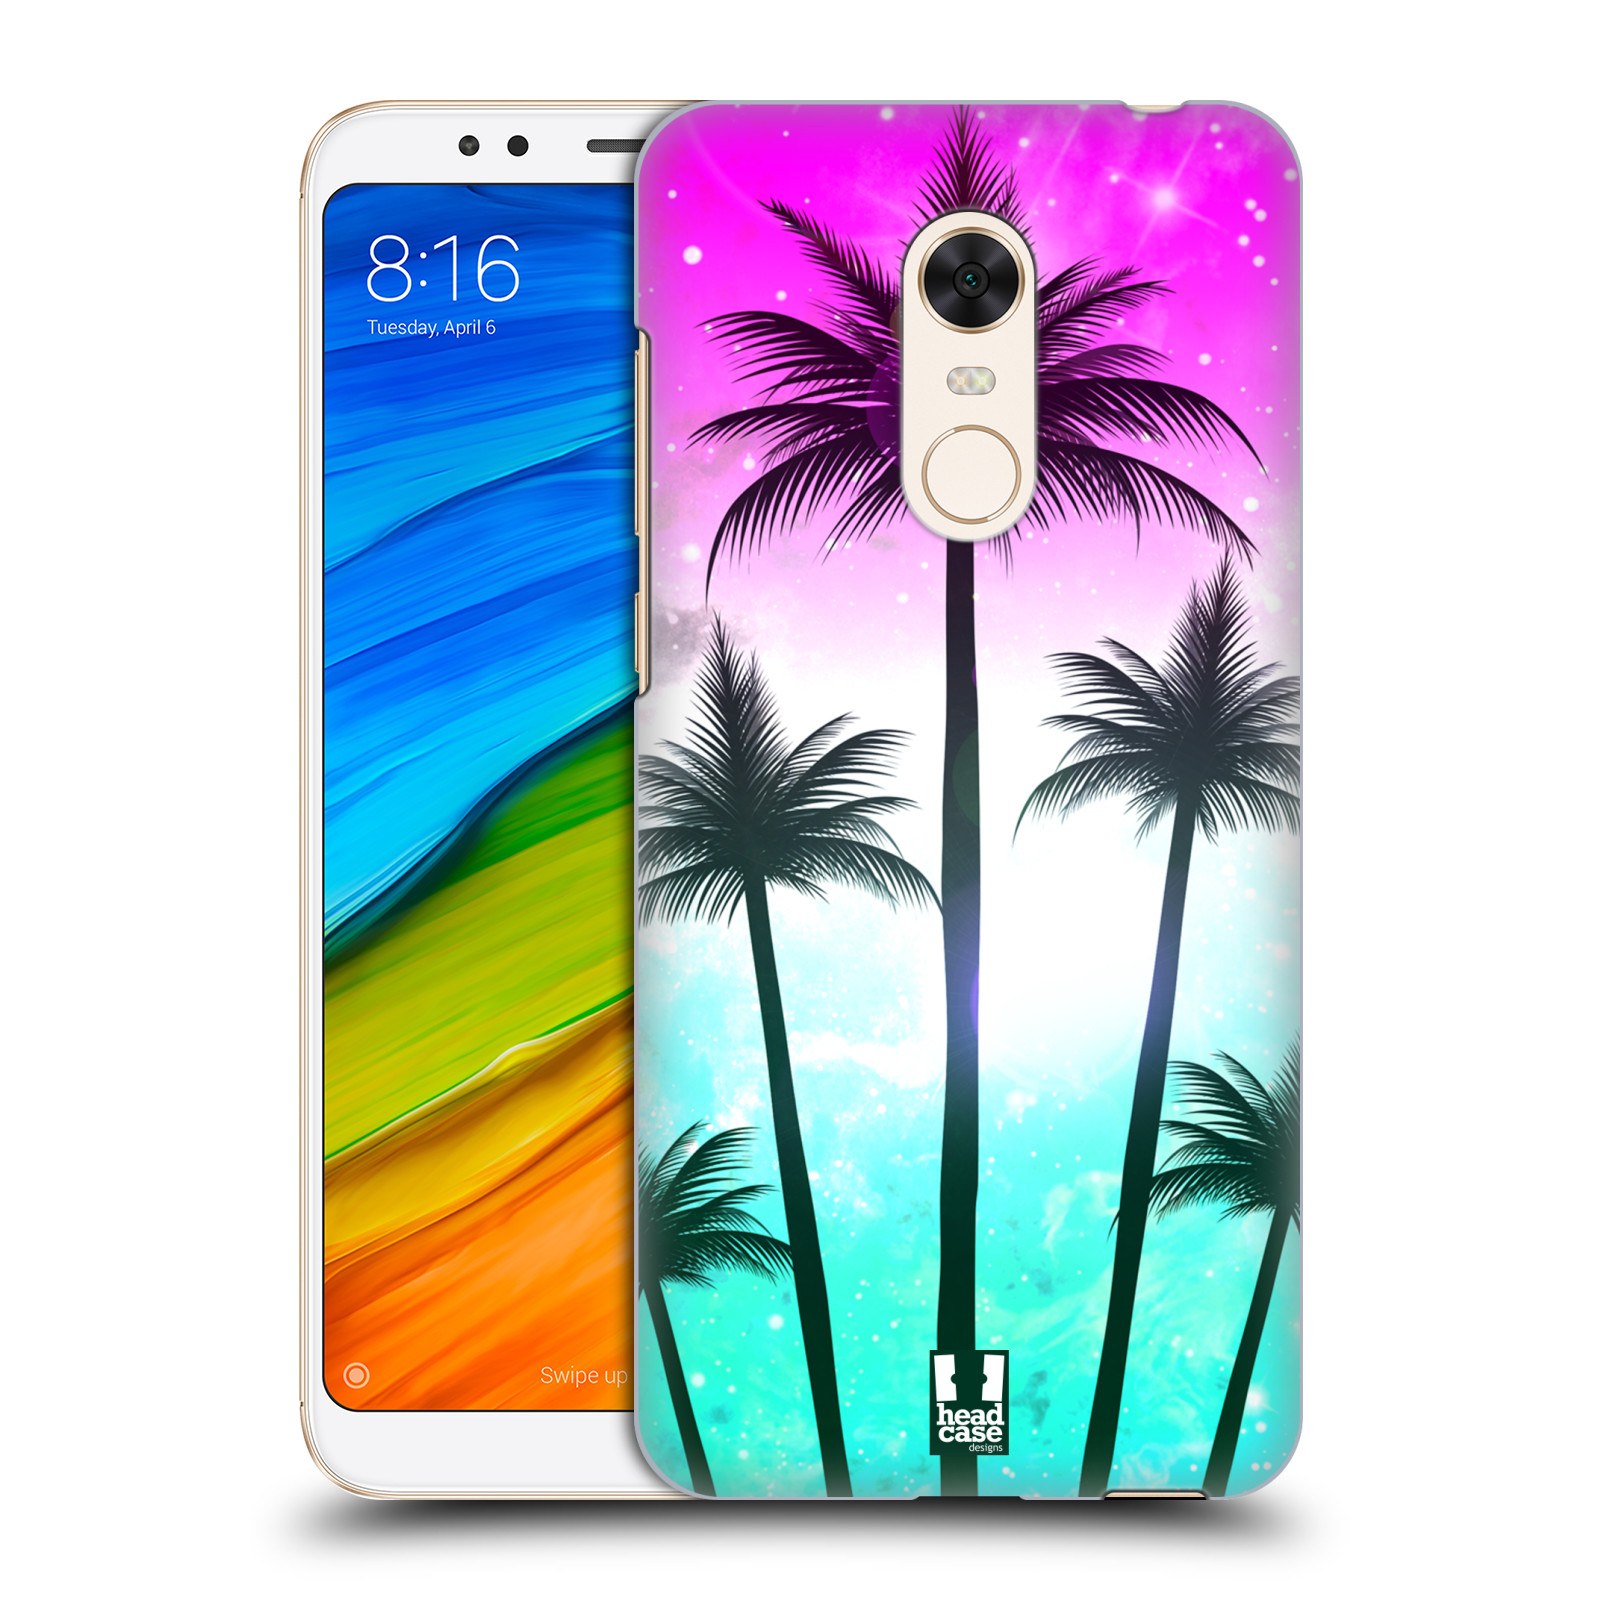 HEAD CASE plastový obal na mobil Xiaomi Redmi 5 PLUS vzor Kreslený motiv silueta moře a palmy RŮŽOVÁ A TYRKYS